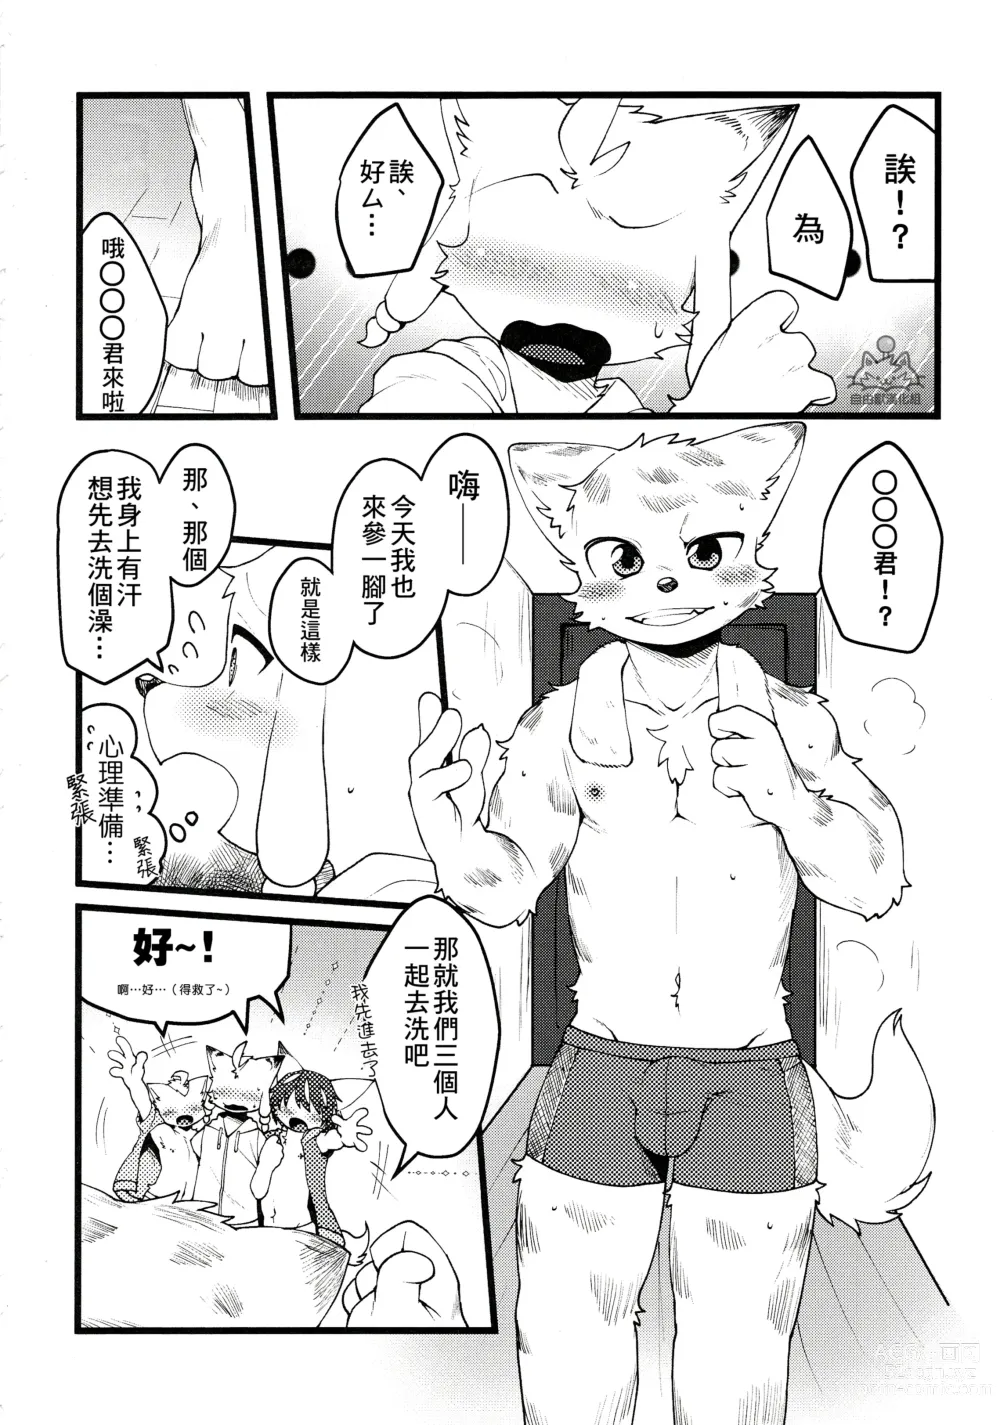 Page 16 of doujinshi 因為都是男孩子所以想做愛也沒問題吧?R